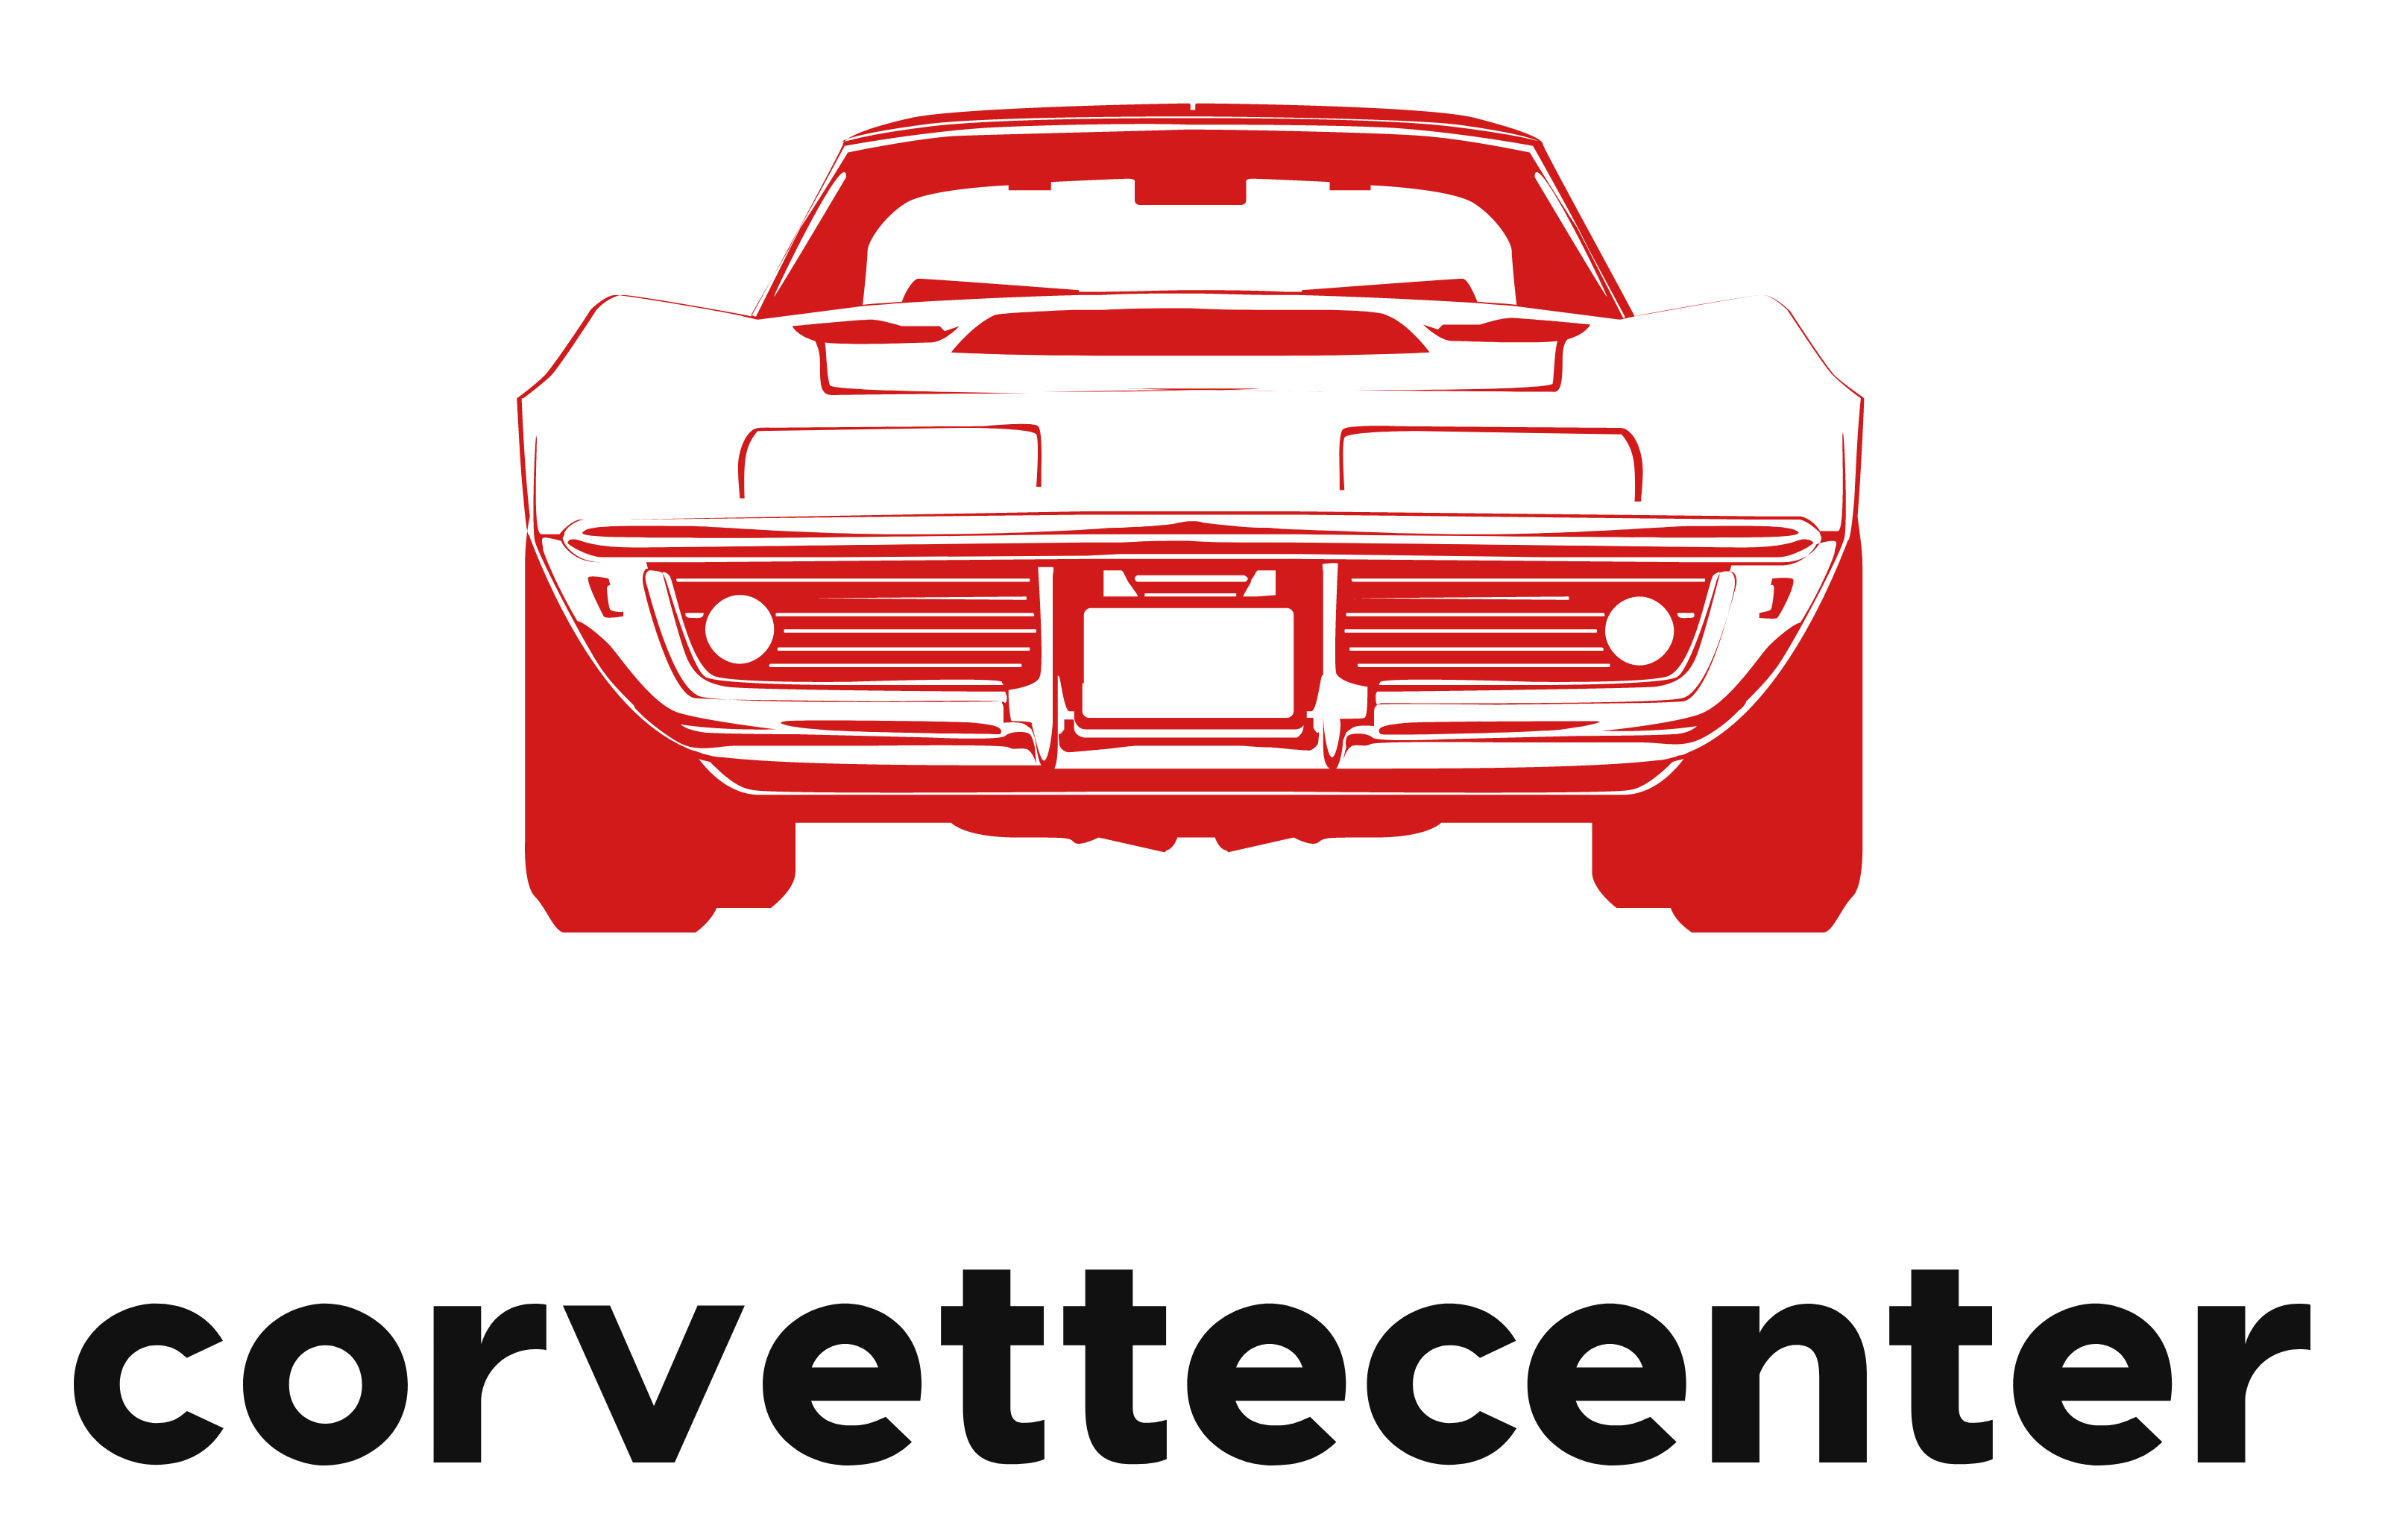 Corvette center